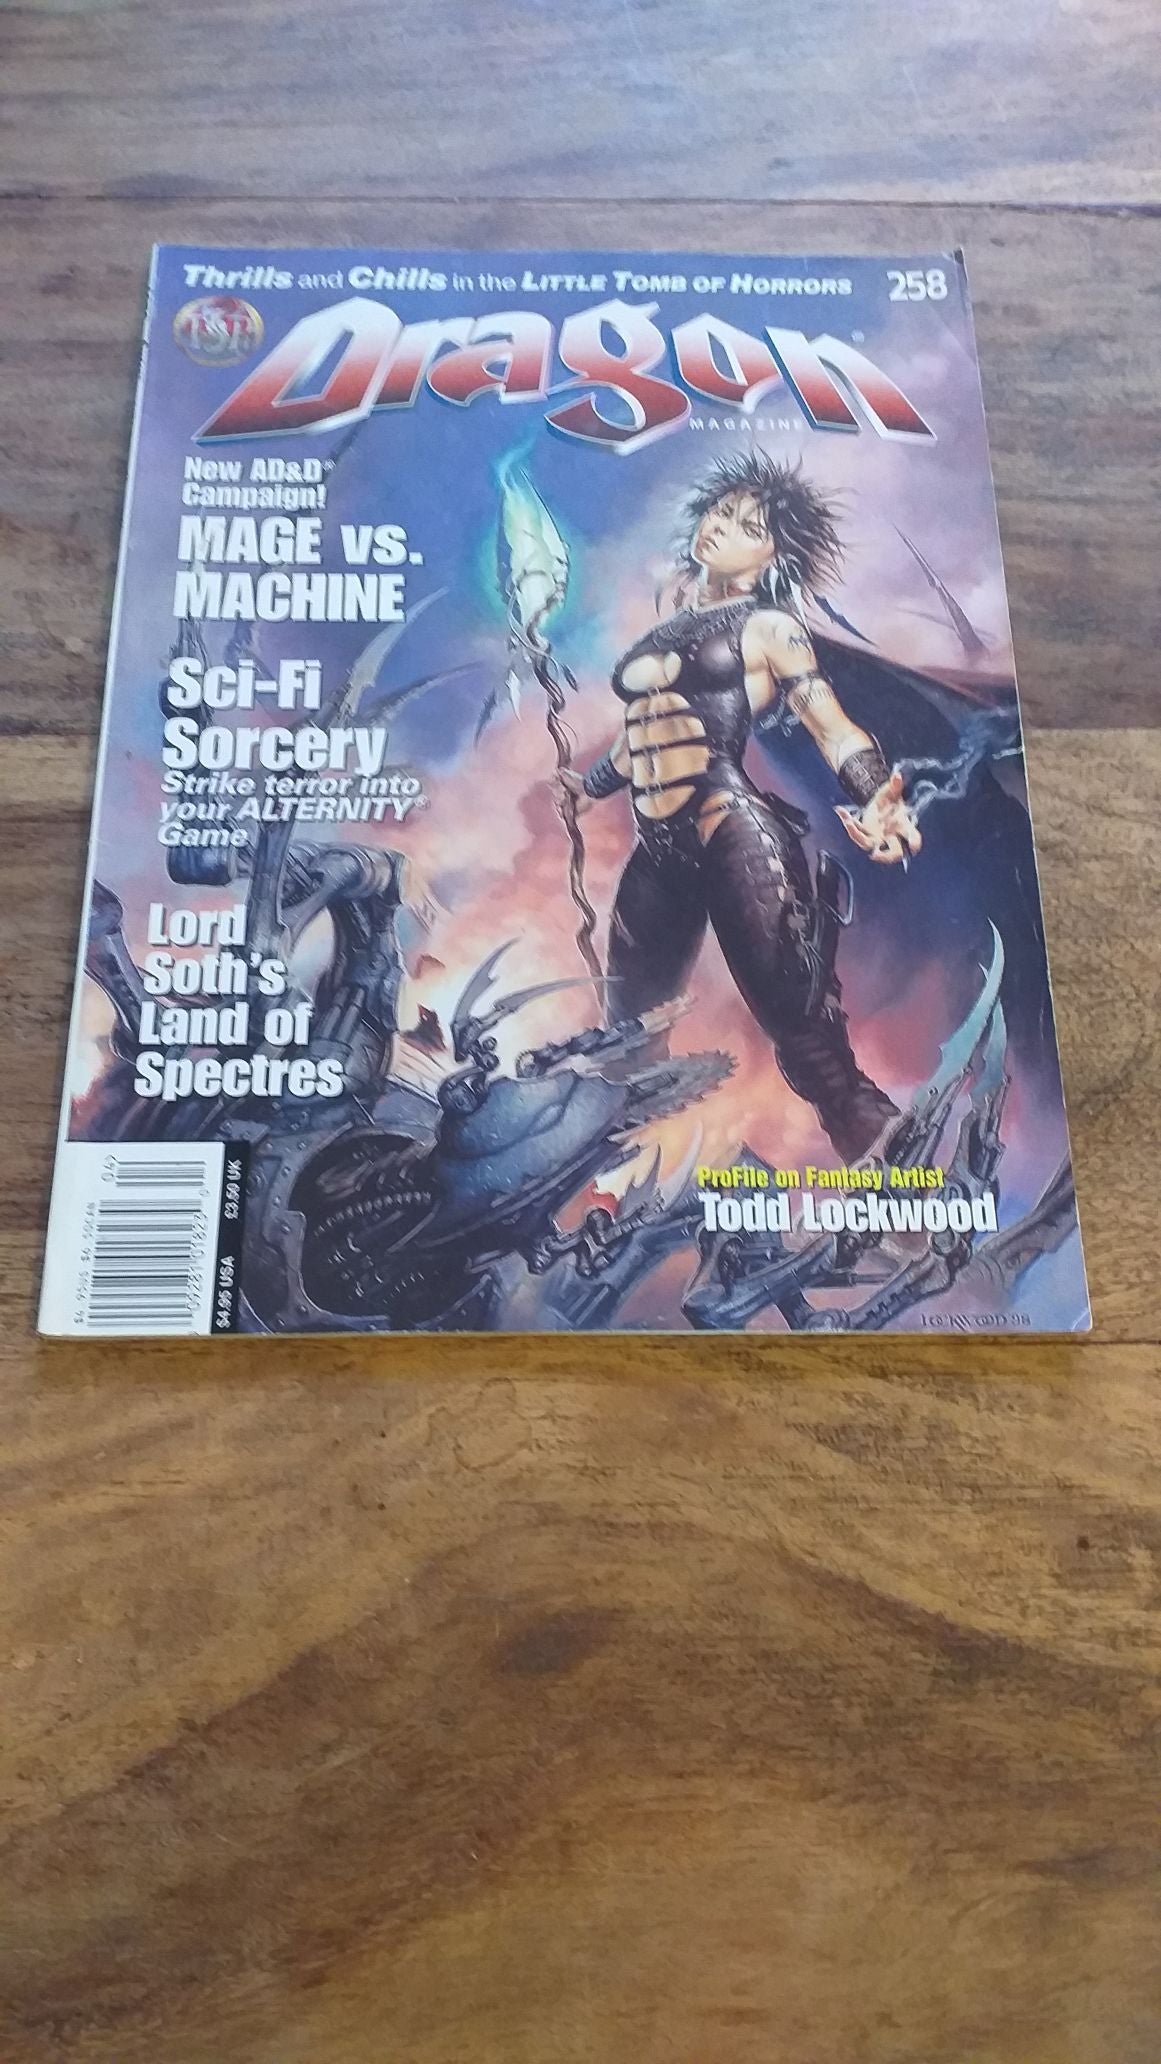 Dragon Magazine April 1999 #258 AD&D Campaign Mage vs Machine